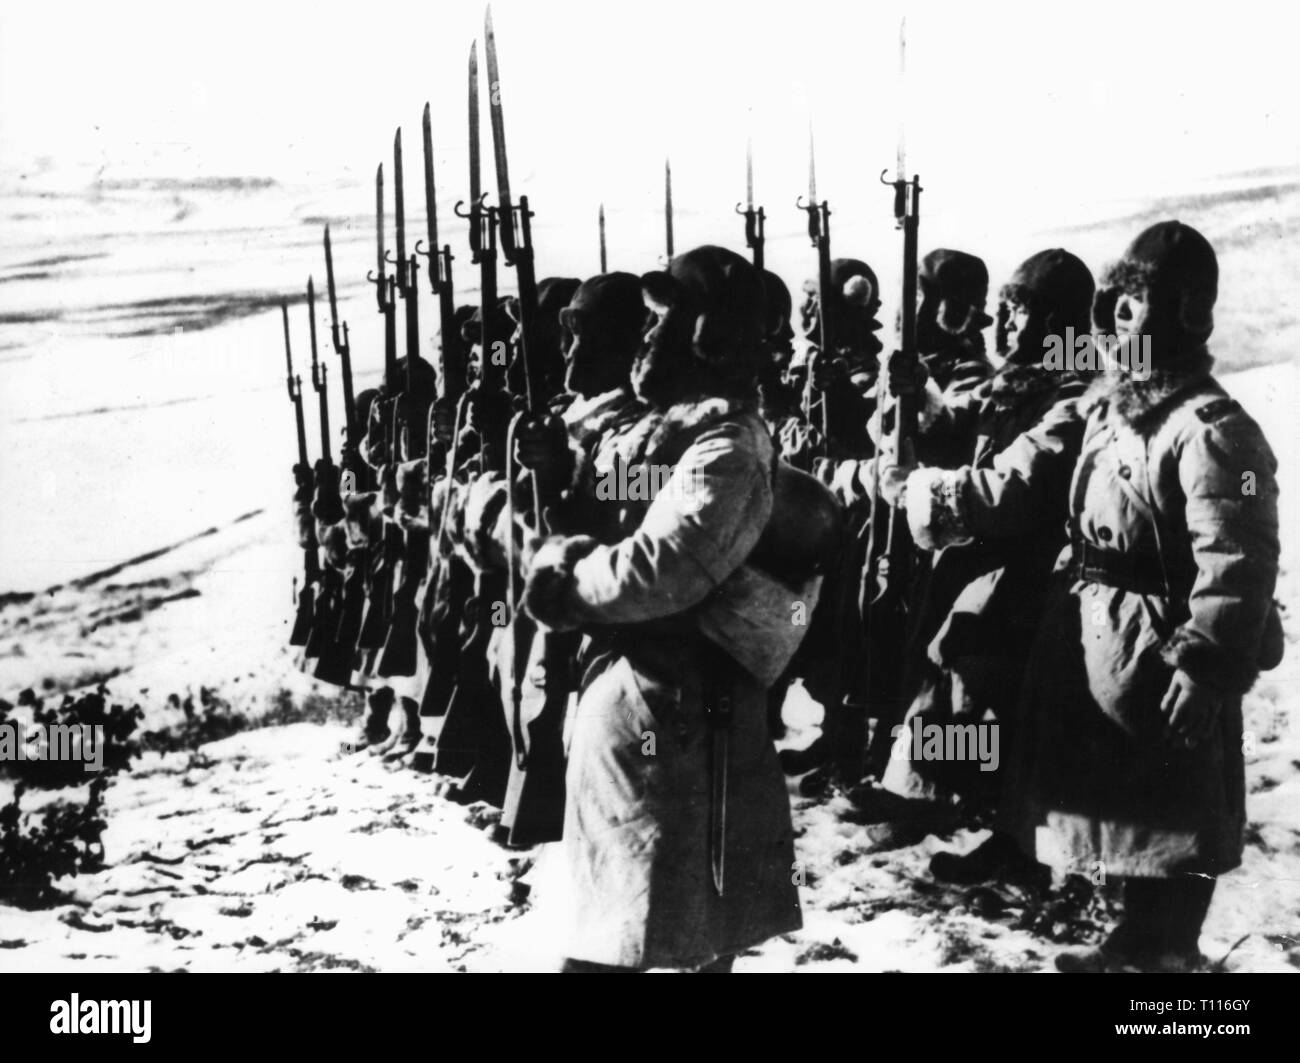 Zweiten Japanisch-Chinesischen Krieg 1937 - 1945, japanischen Soldaten ihre Gewehre, China, später 1930er Jahre, Additional-Rights - Clearance-Info - Not-Available Stockfoto